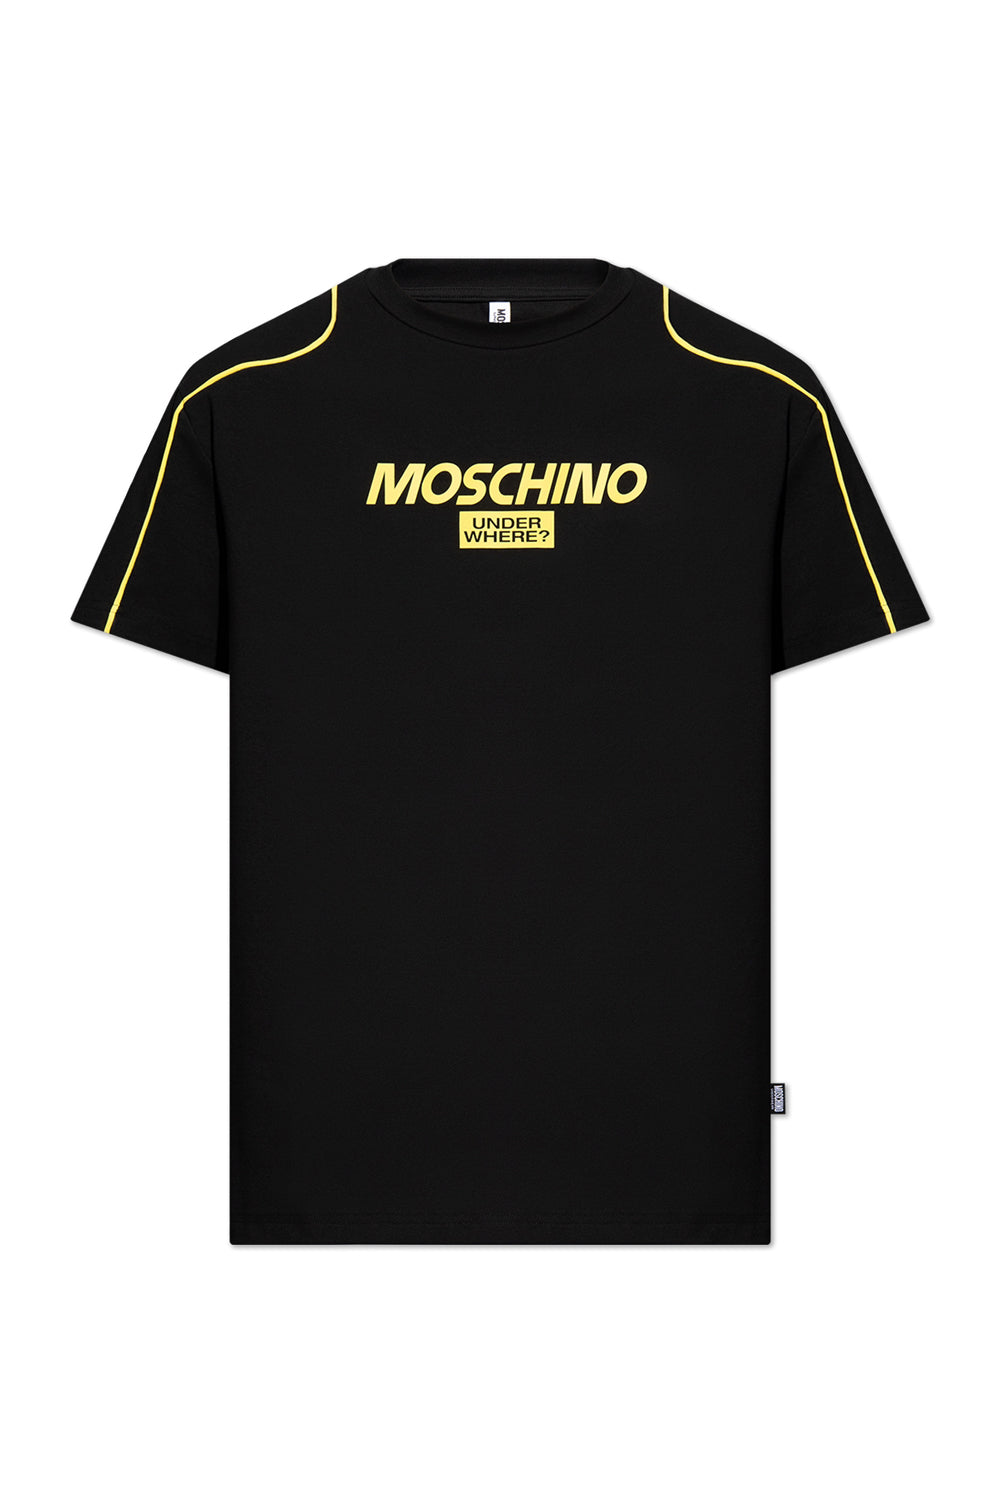 Moschino T Shirt A0707 4420 Blk Yellow Preto Amarelo_shot1